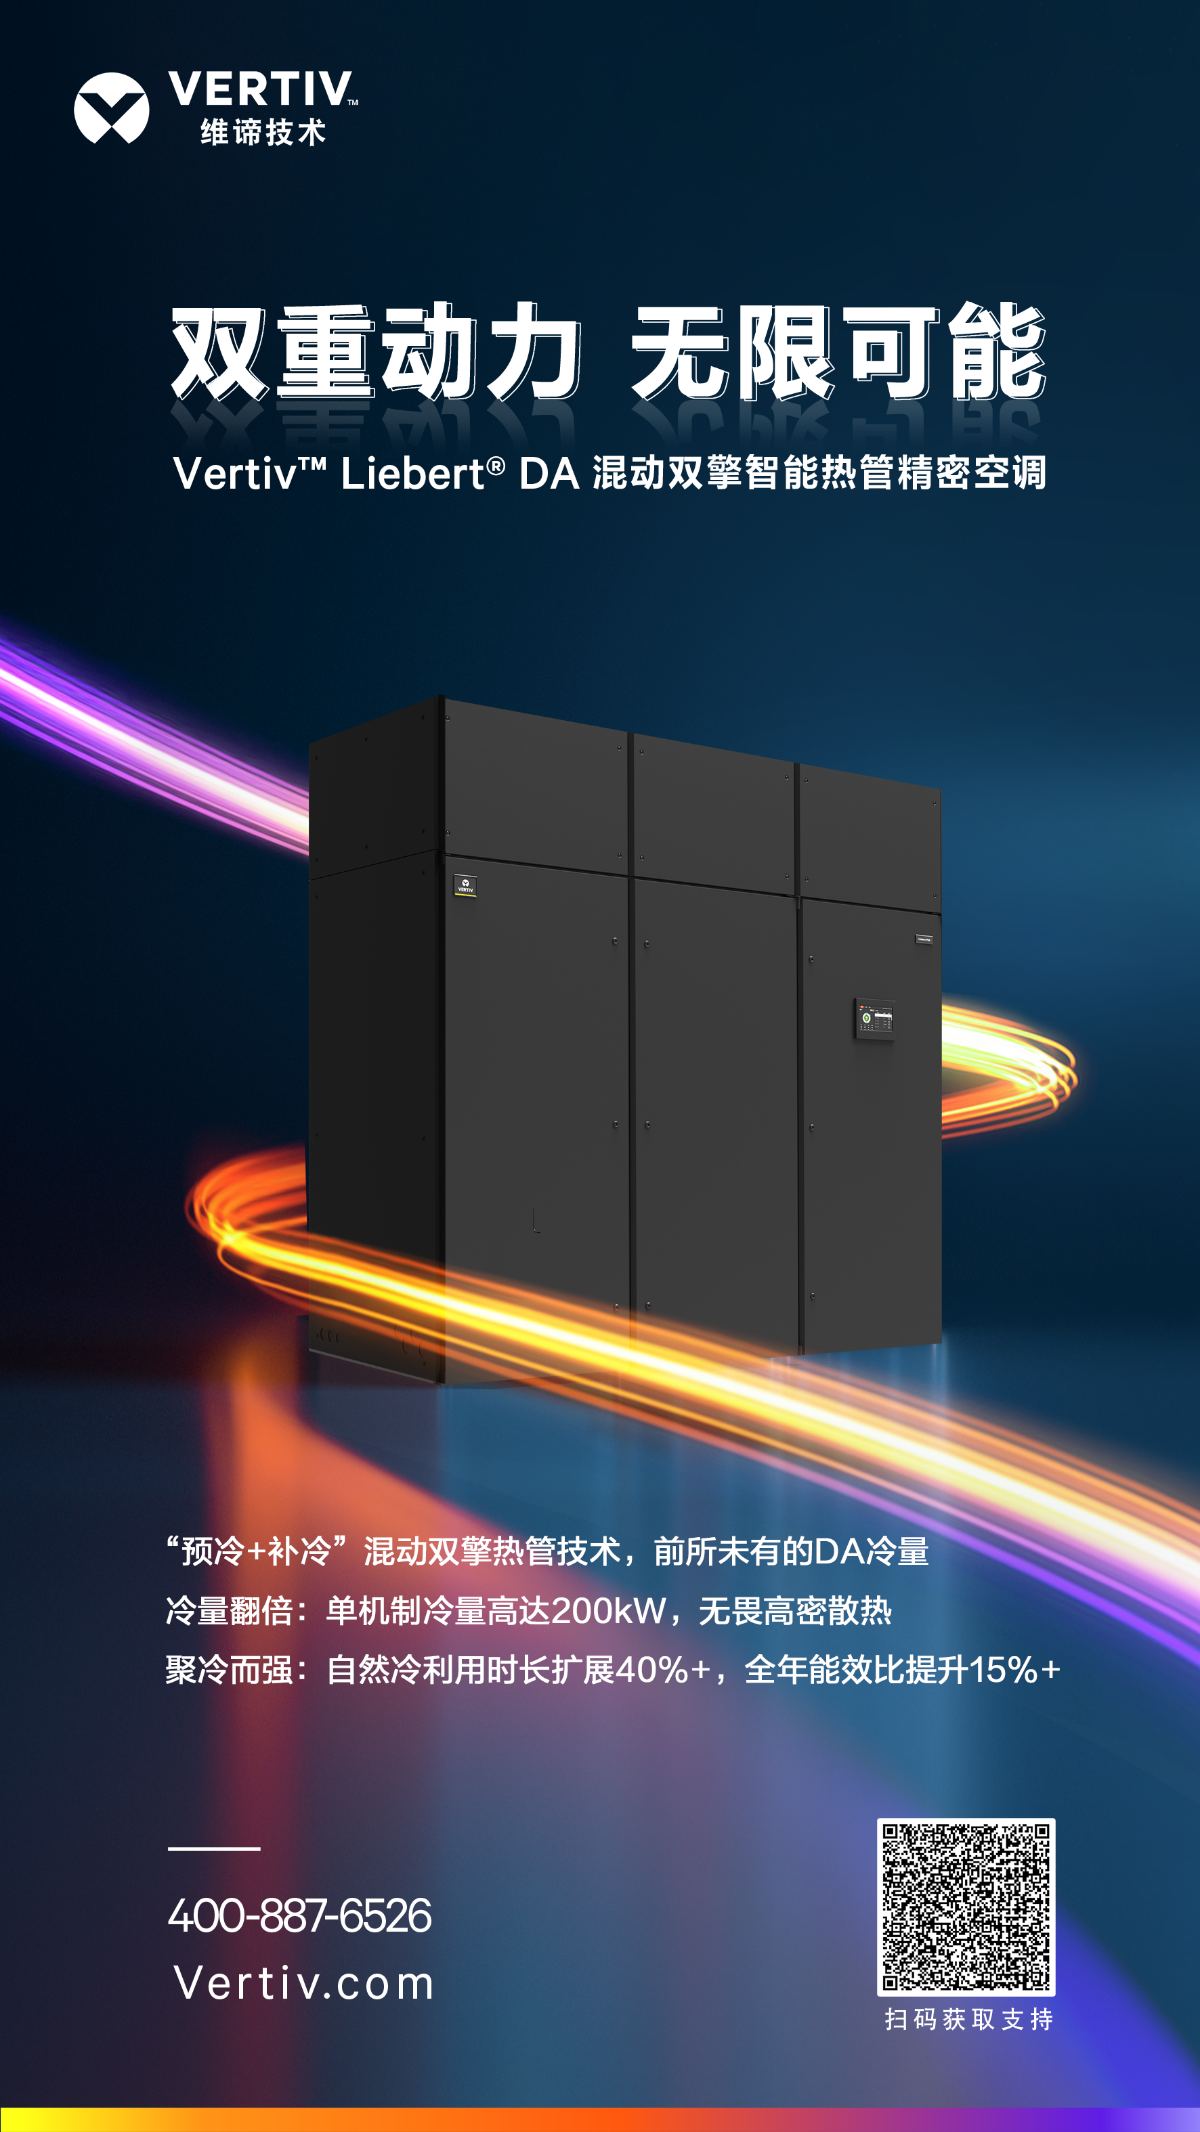 新品发布 | Vertiv™ Liebert® DA，双重动力，无限可能